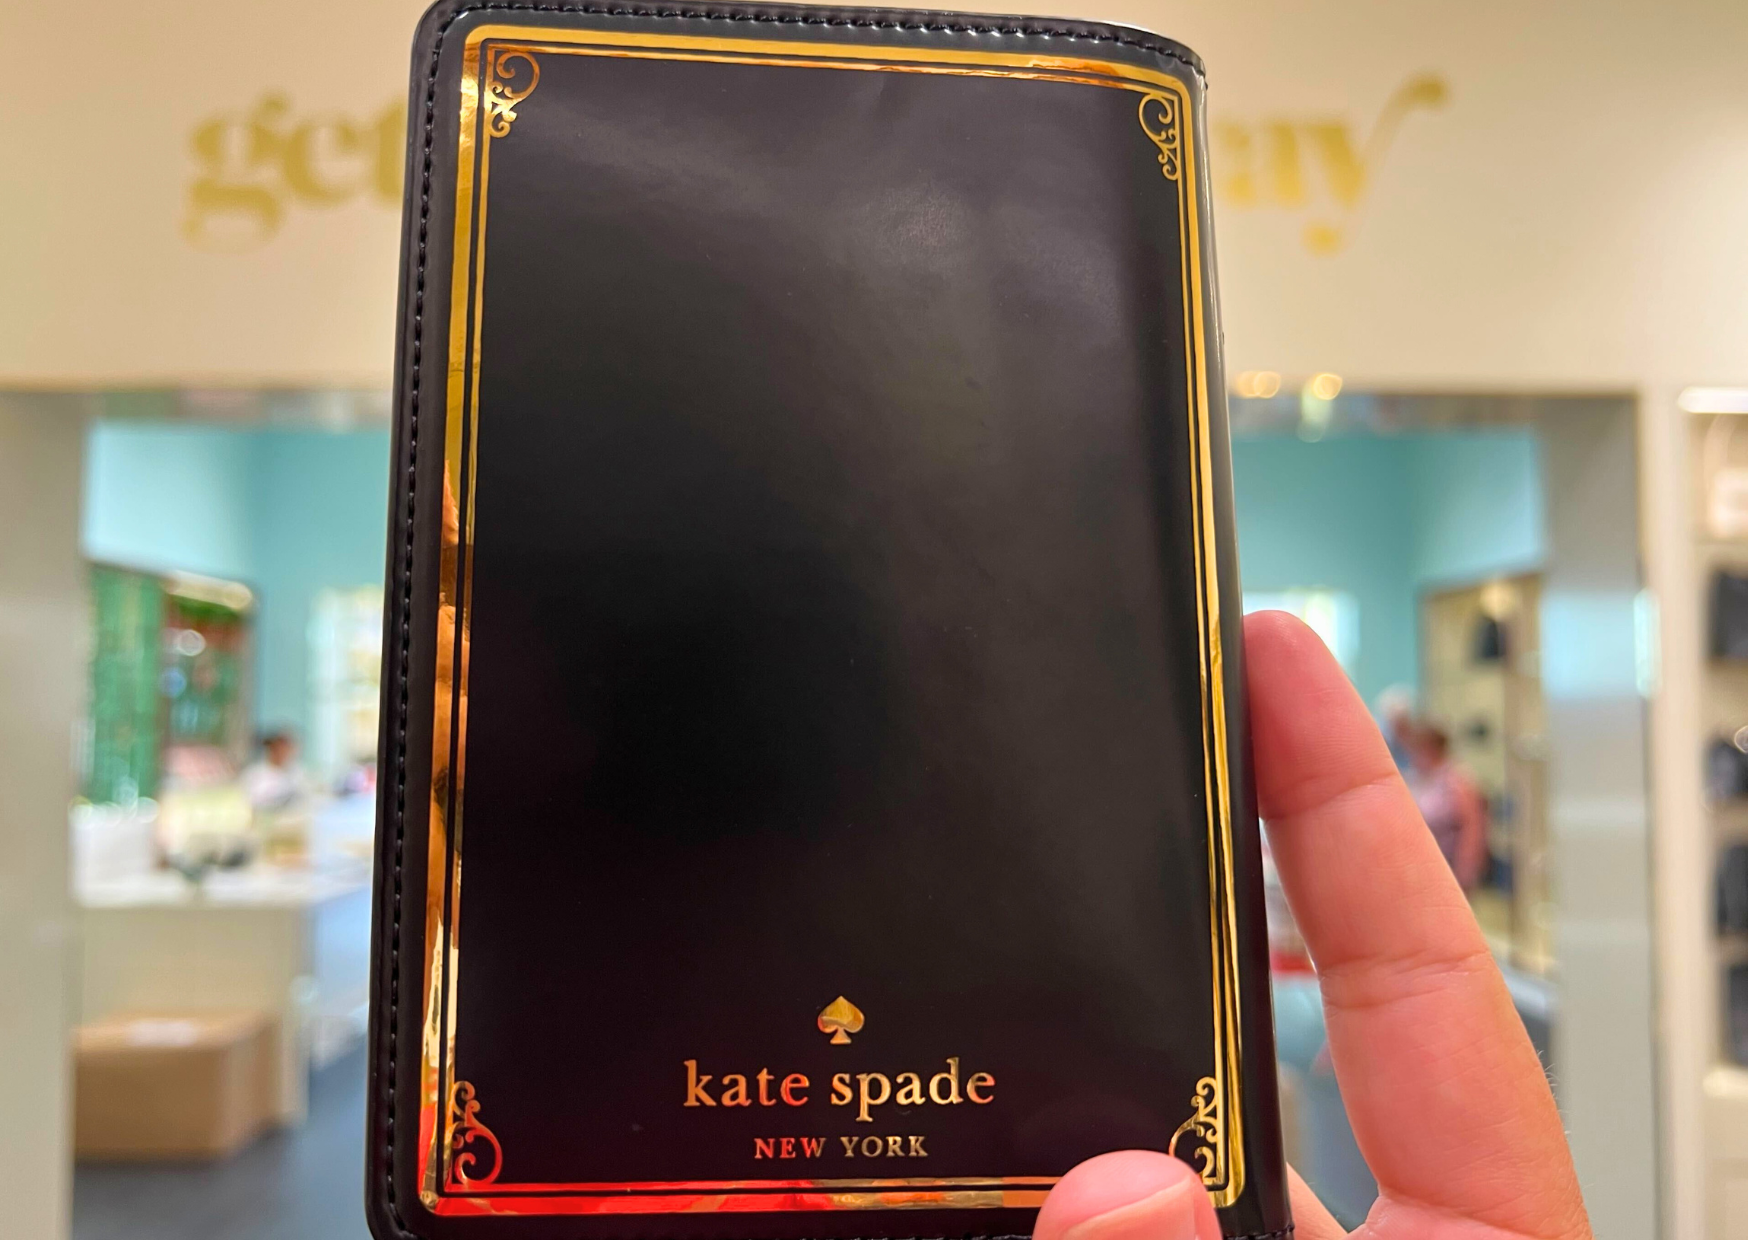 Kate spade ipad case - PB & Lotus